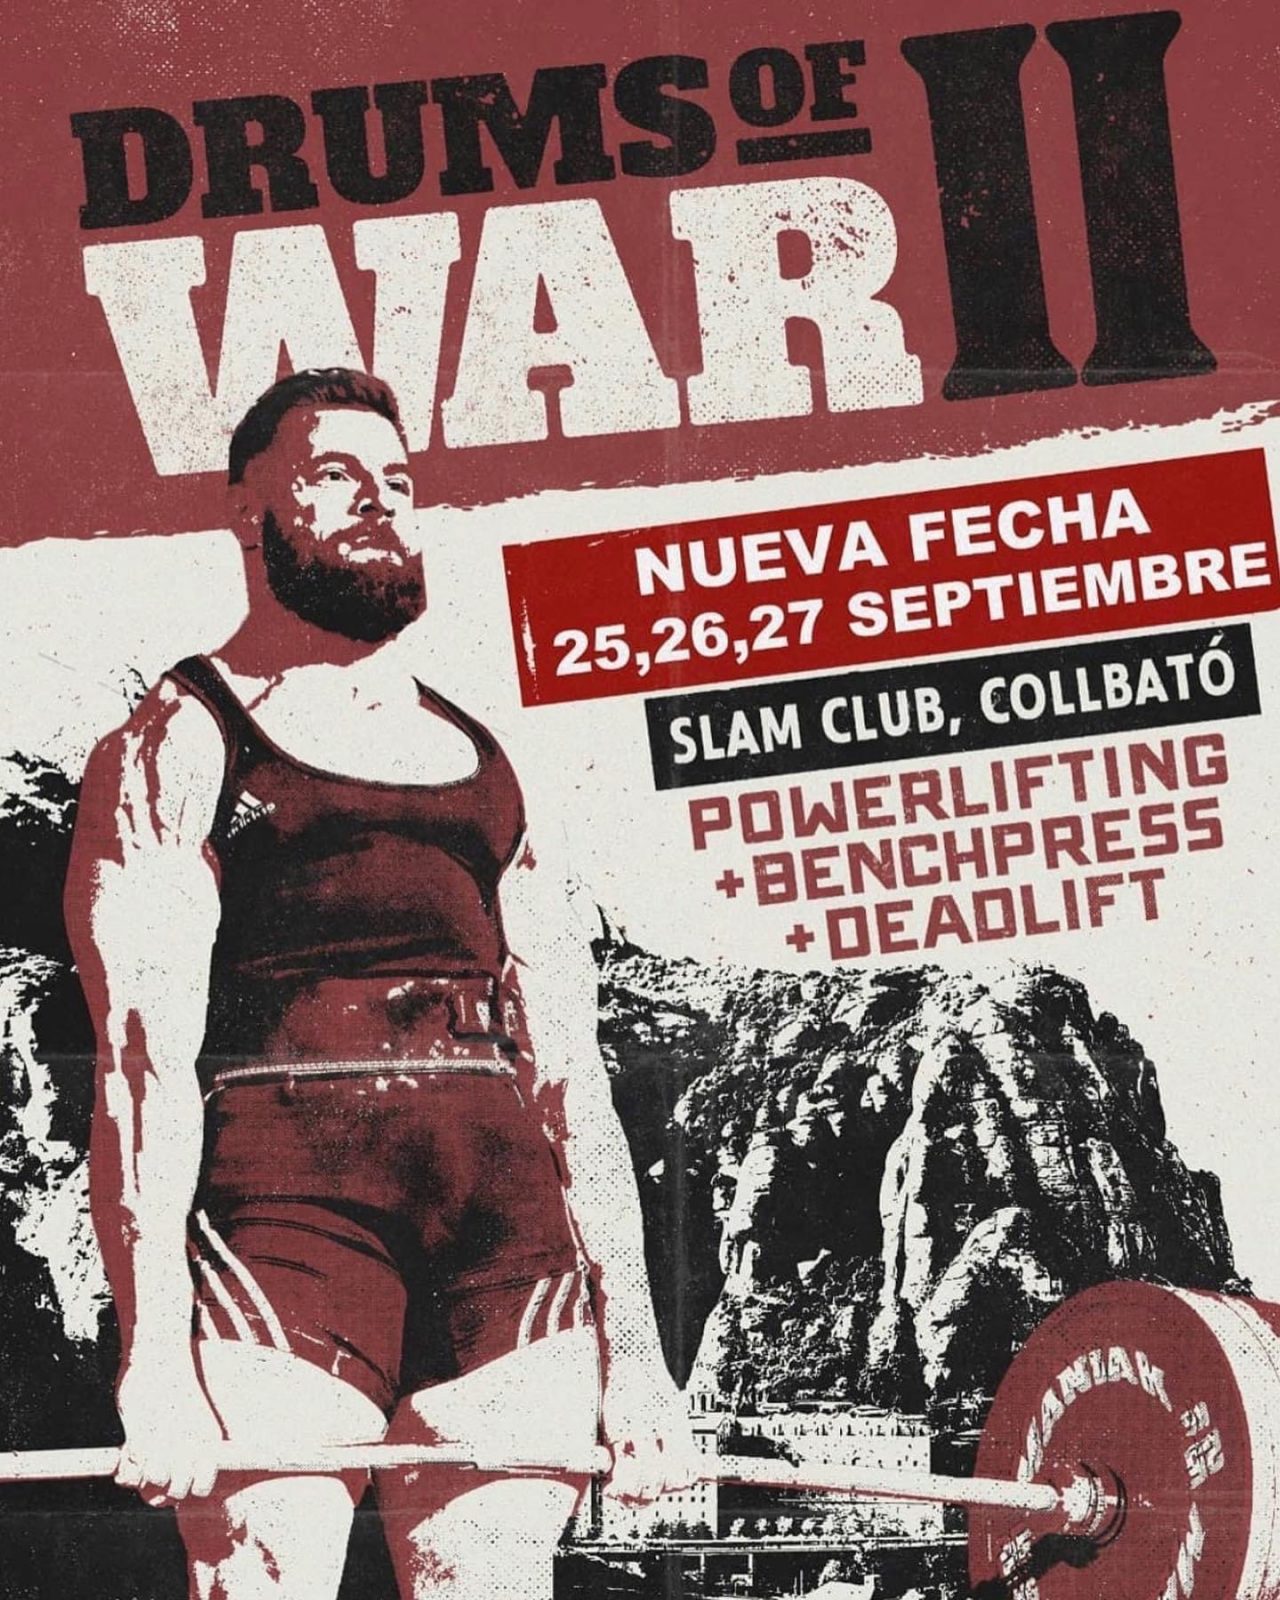 Ежегодный национальный турнир "Drums of war II" по пауэрлифтингу, жиму лежа и становой тяге, Испания / Колбато, Барселона, 25-27.09.2020